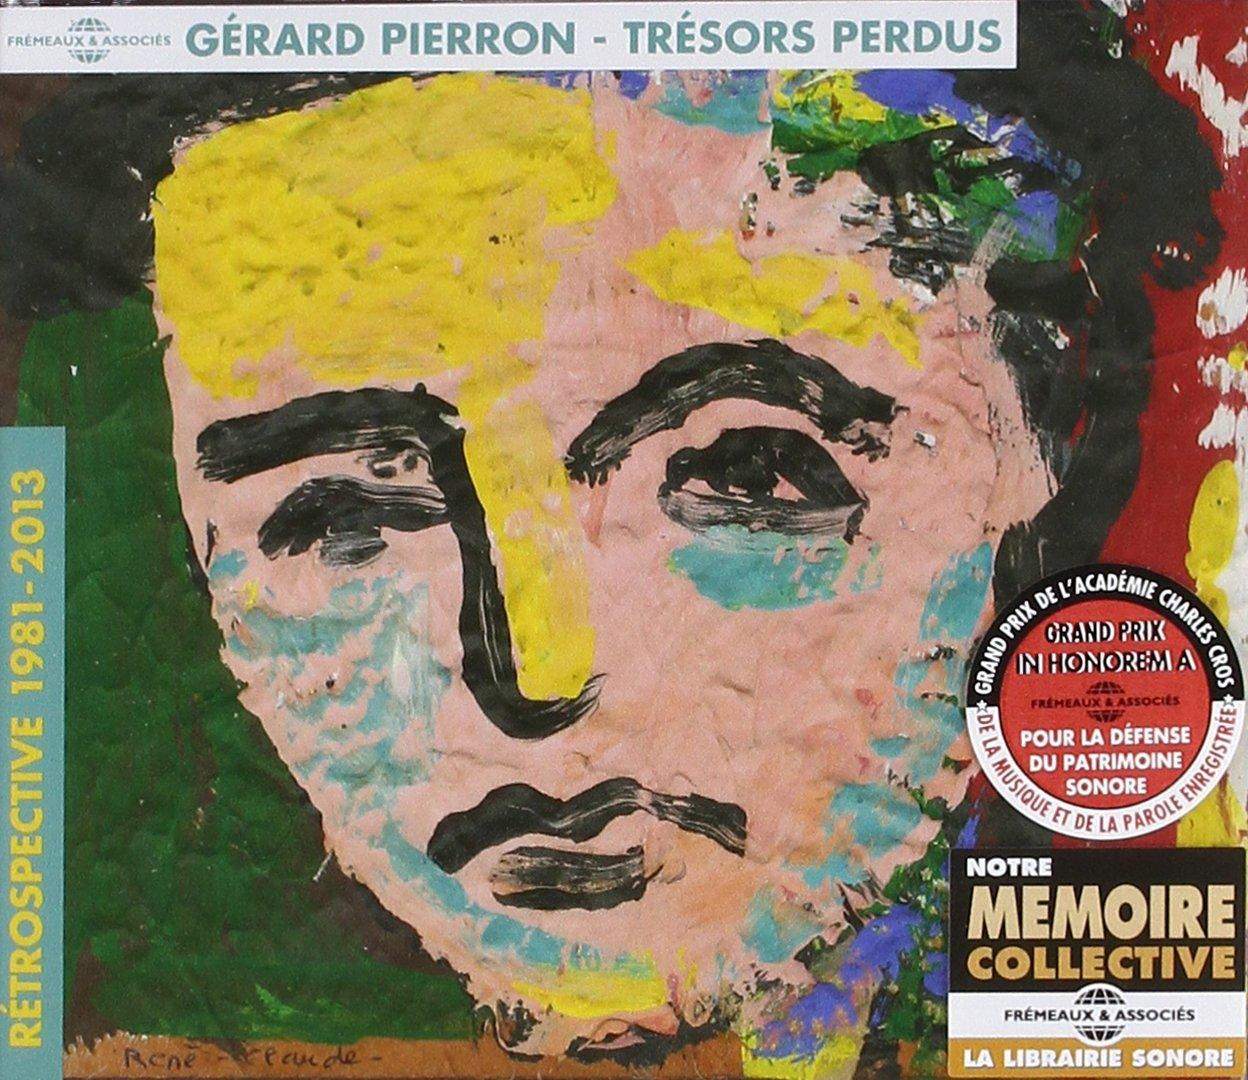 Gerard Pierron - Trésors (CD) 1981-2013 - Perdus-Rétrospective